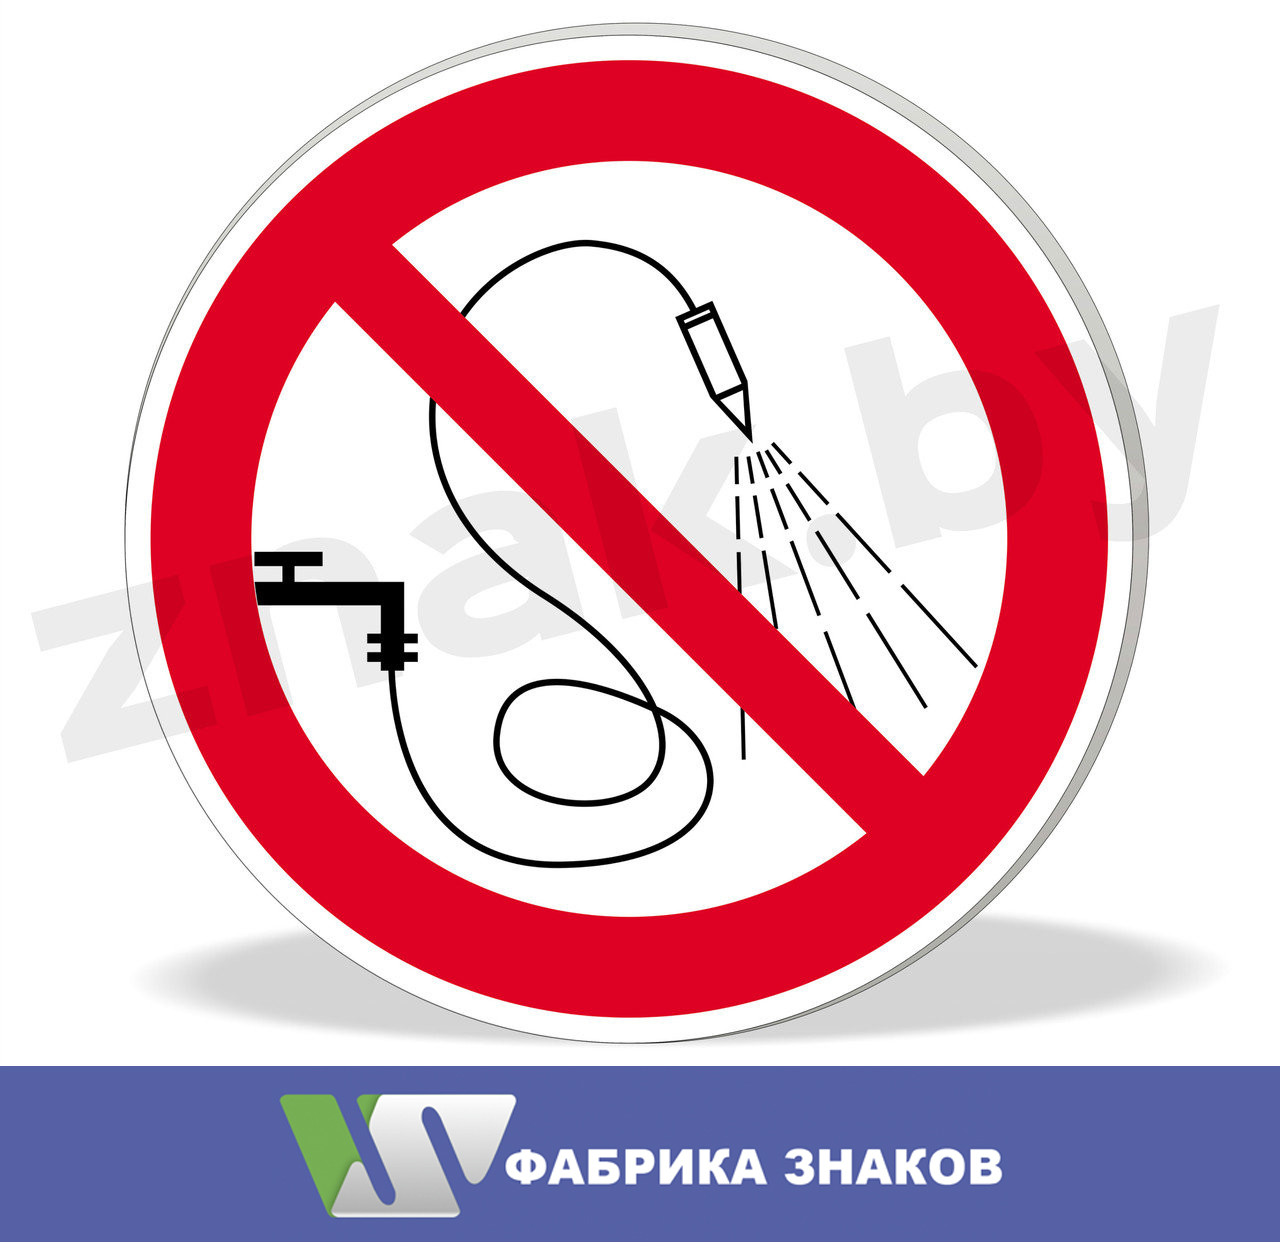 Знак "Запрещается разбрызгивать воду"